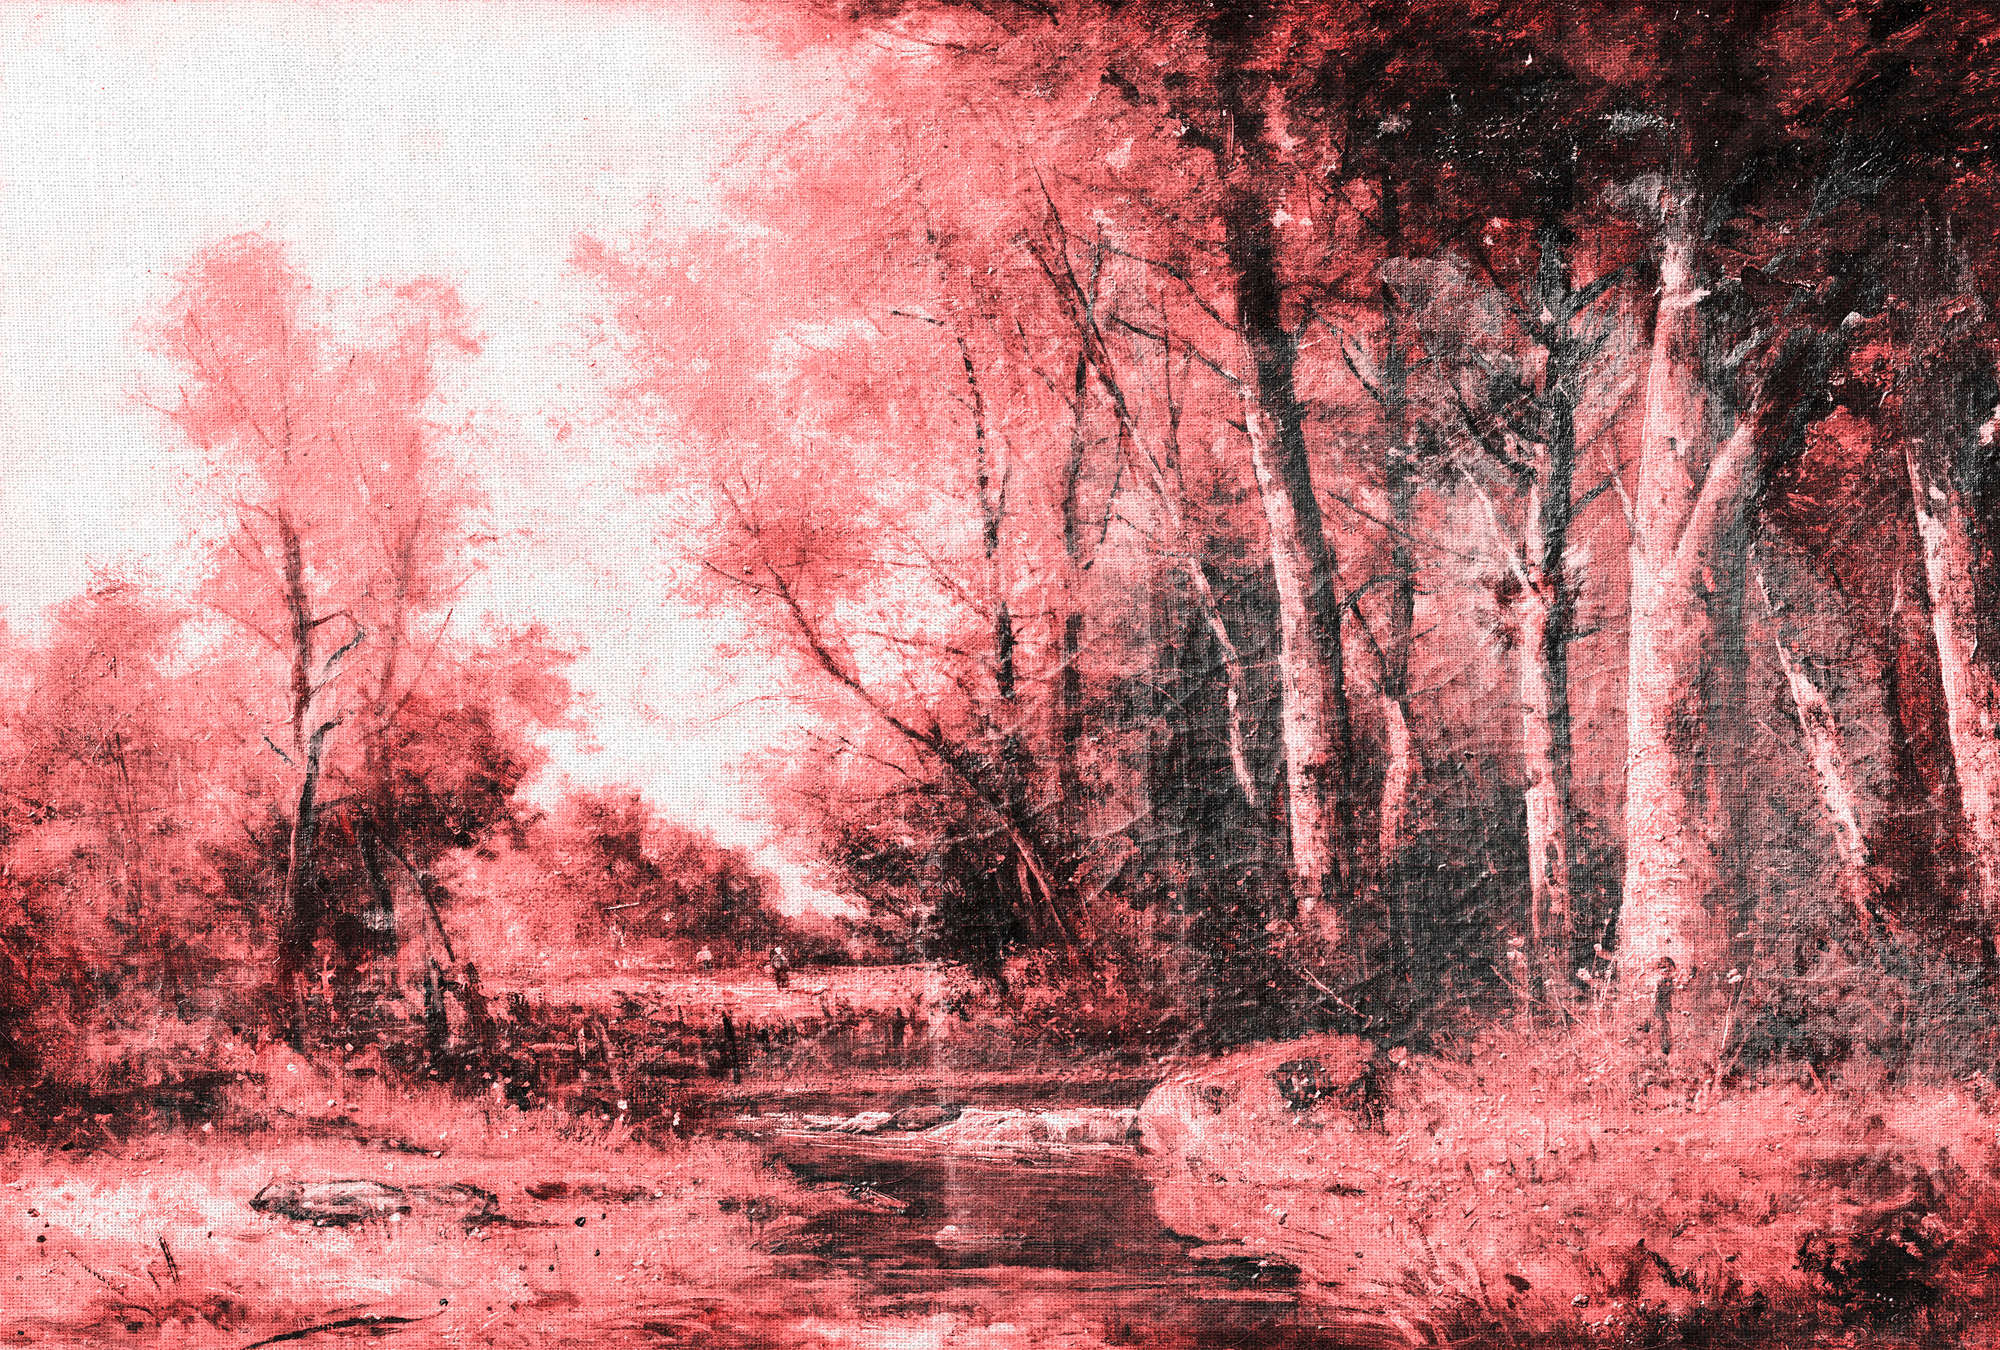             Pittura murale di paesaggio, panorama forestale - Rosa, bianco, nero
        